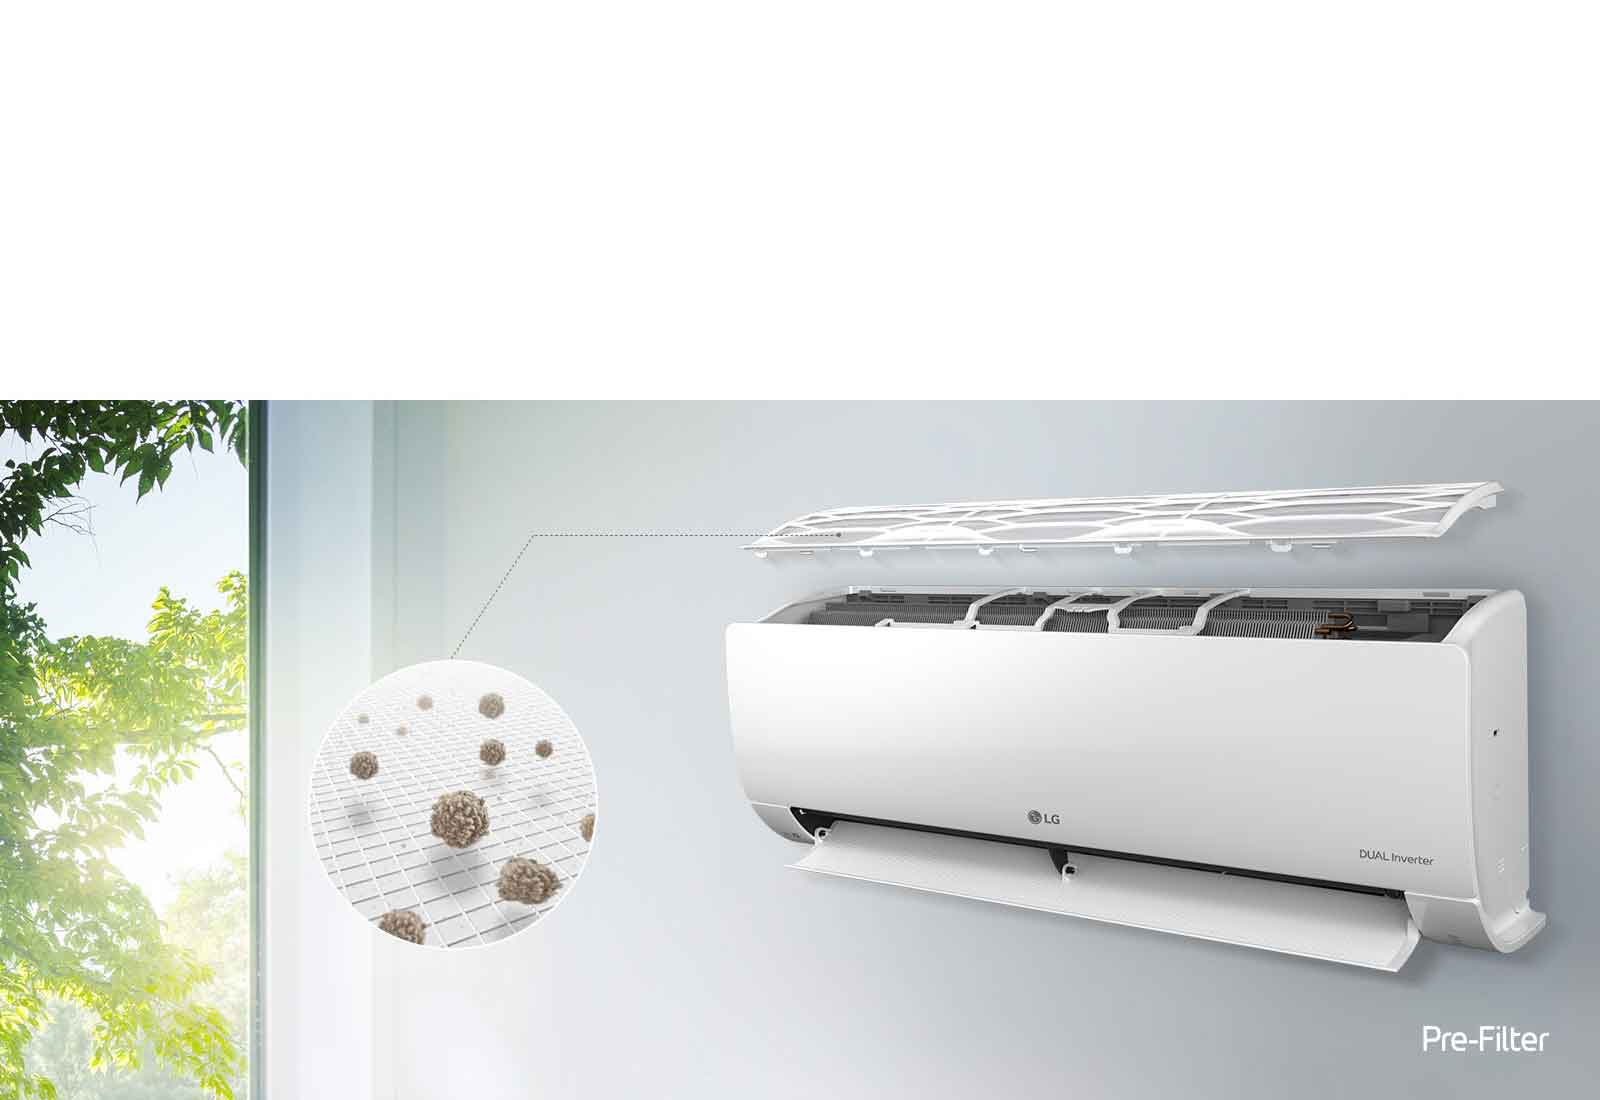 De LG-airconditioner is aan de muur bevestigd en gezien vanaf de zijkant. Het bovenste paneel is open, zodat de binnenste filters te zien zijn. Een lijn van het voorfilter leidt naar een vergrote cirkel die het stof toont dat in het voorfilter gevangen zit. Het logo van het voorfilter staat rechtsonder.